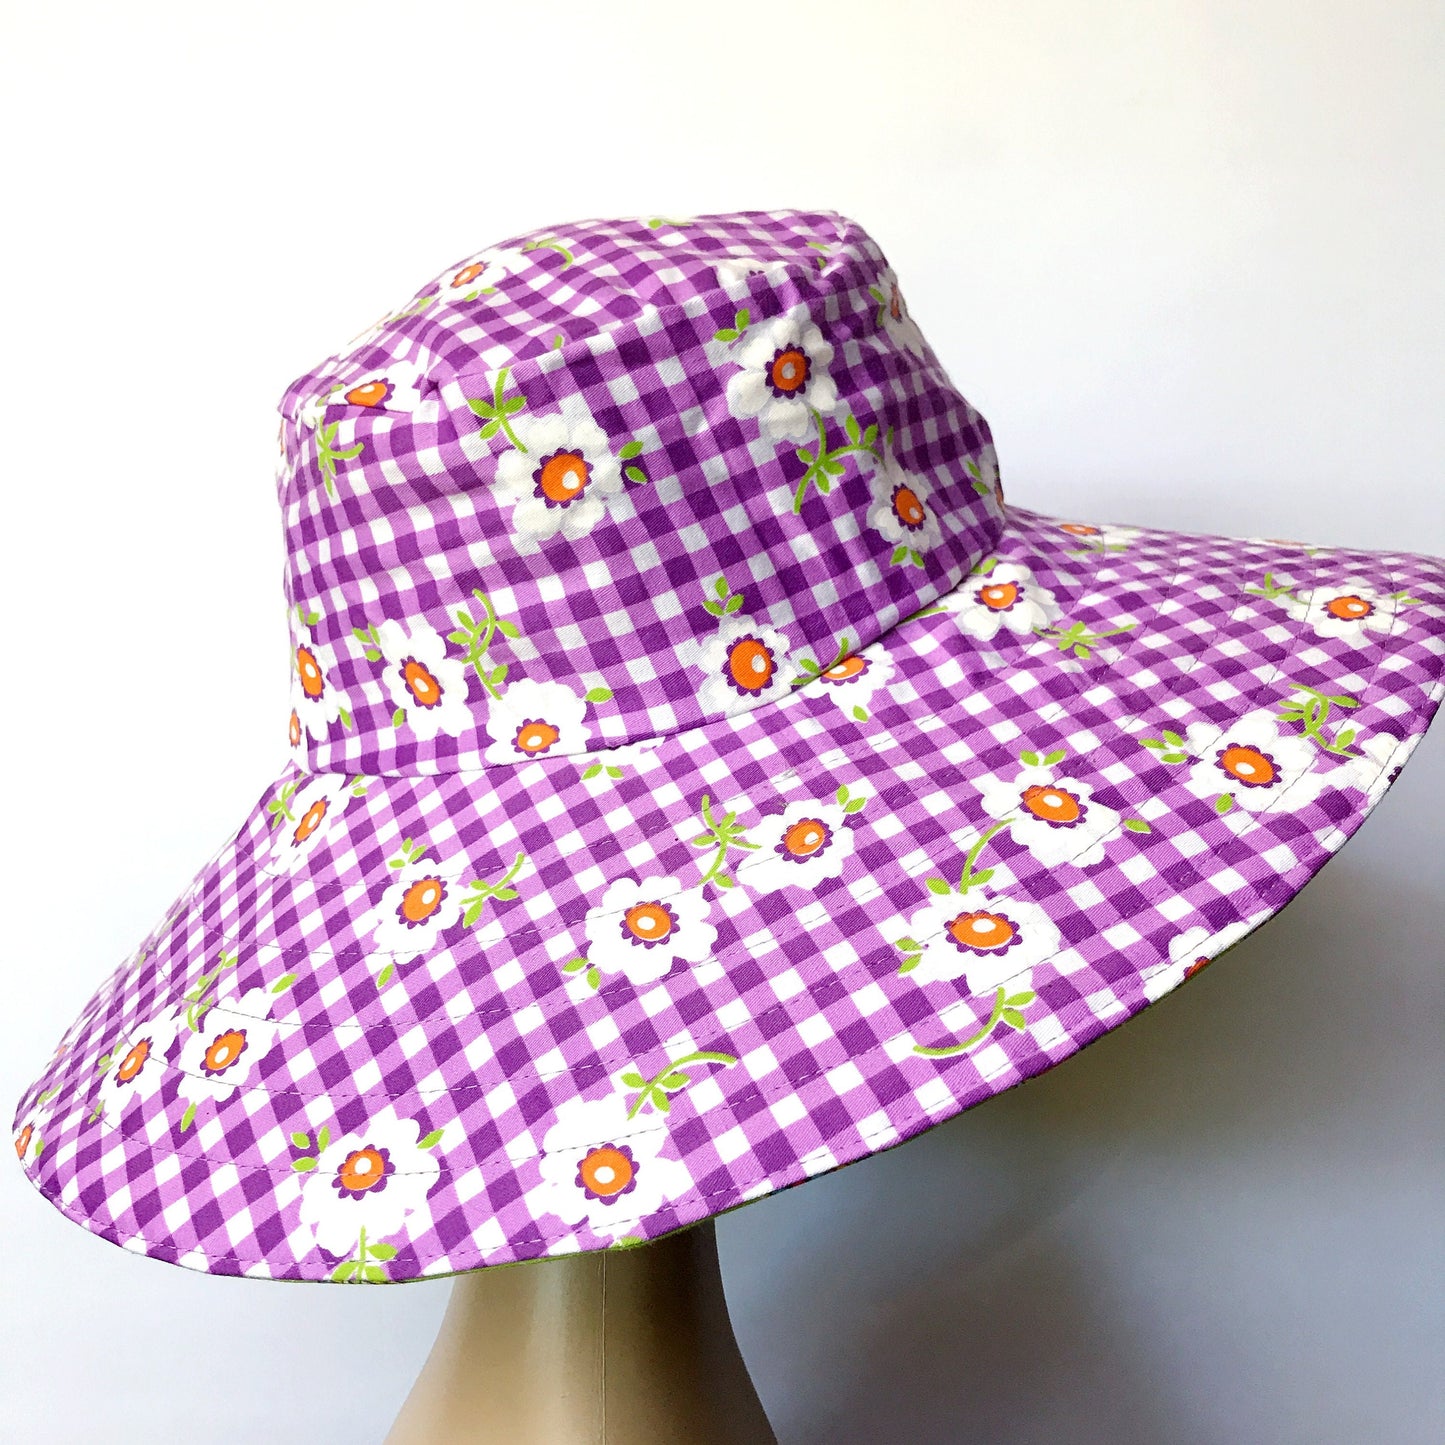 Wide Brim Reversible Sun Hat, Ladies / Girls sizes avail - vintage purple floral